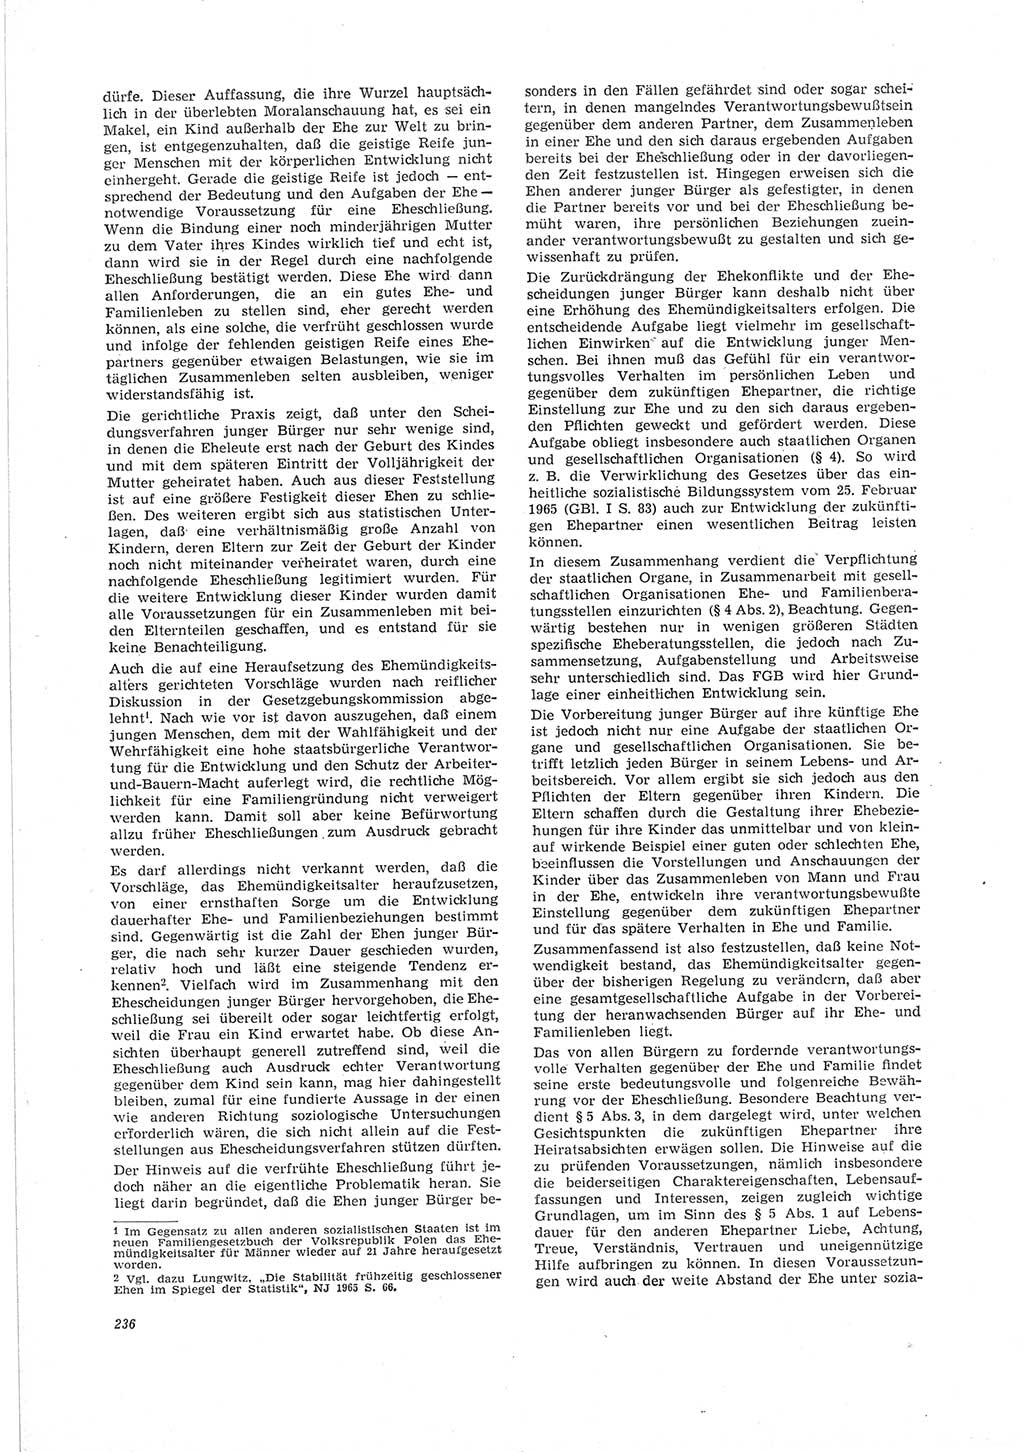 Neue Justiz (NJ), Zeitschrift für Recht und Rechtswissenschaft [Deutsche Demokratische Republik (DDR)], 19. Jahrgang 1965, Seite 236 (NJ DDR 1965, S. 236)